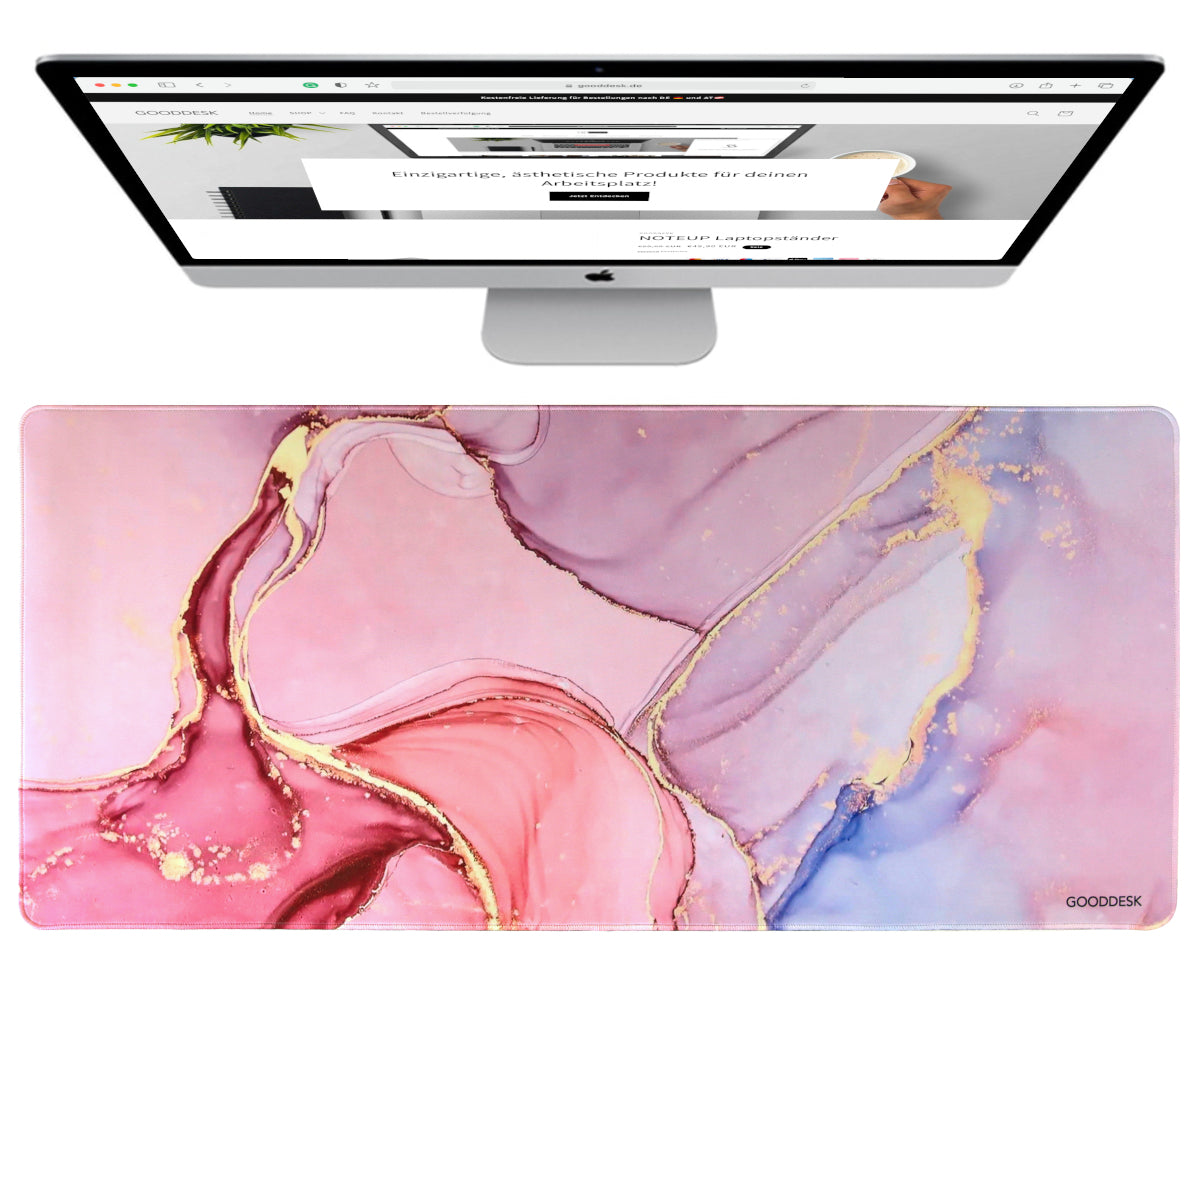 MAMORDESK Schreibtischunterlage Desk mat Mamor design Farben pink rose gold blau rot ergonomisch Farbe Cream Jade